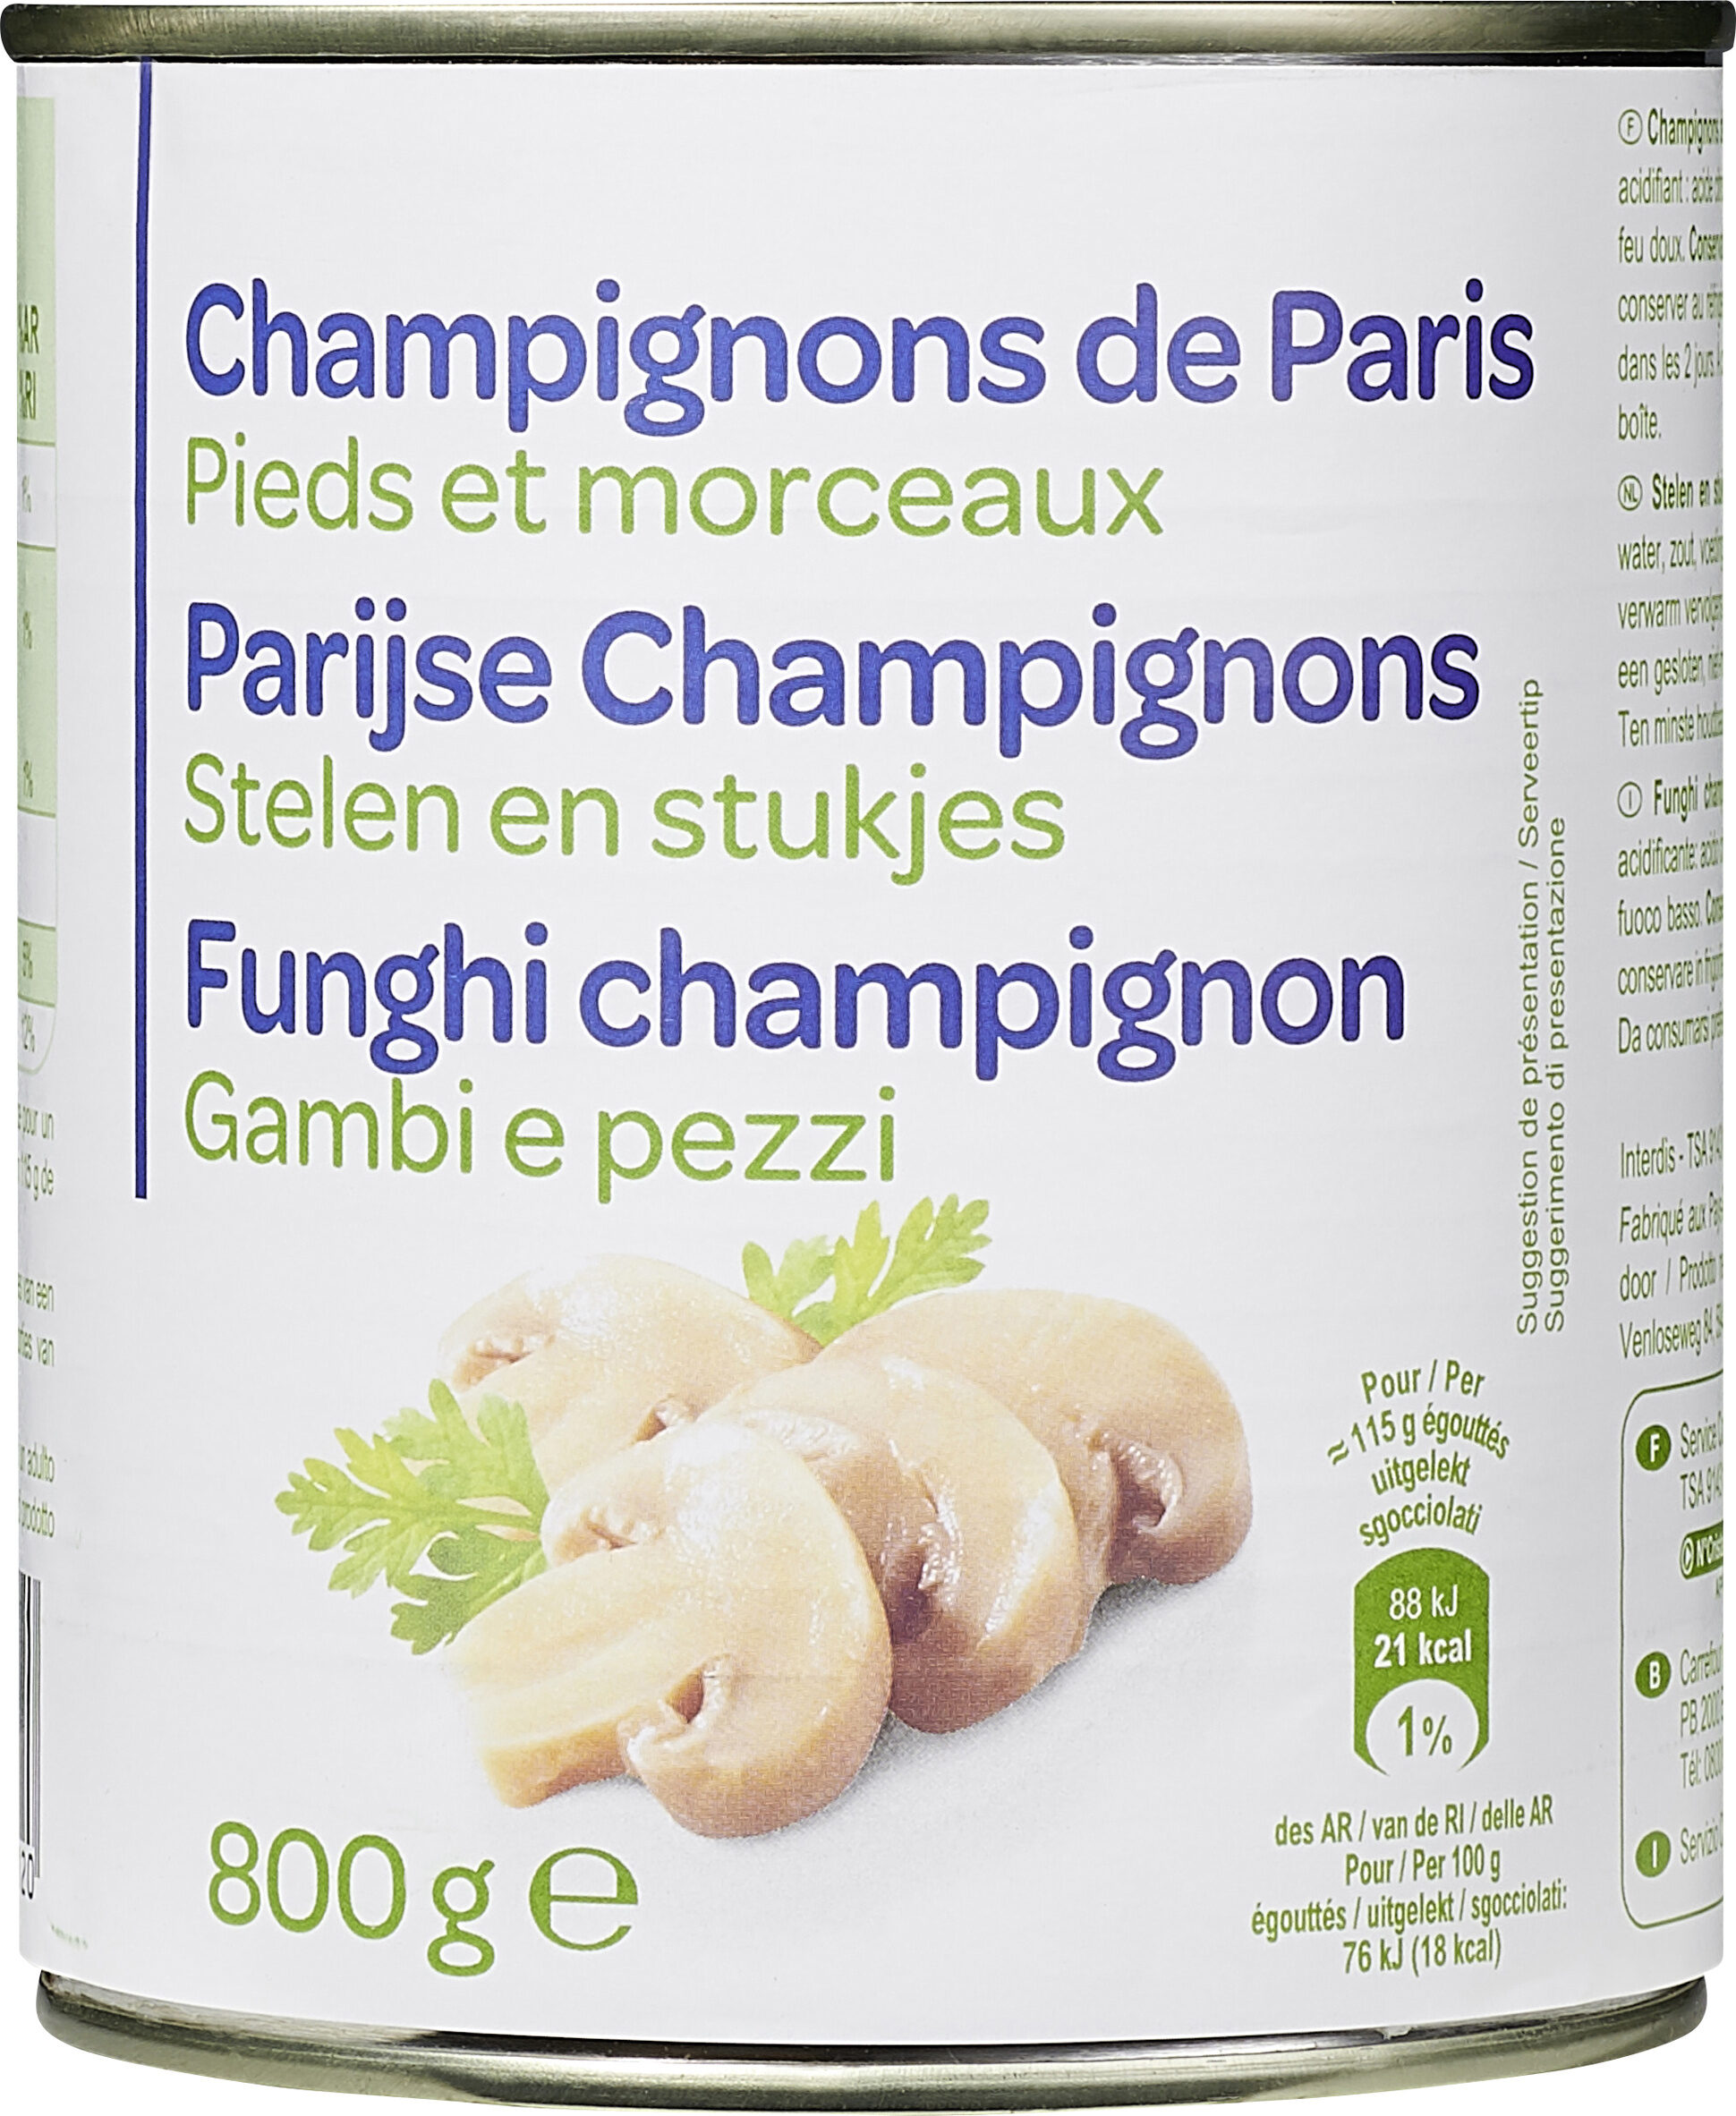 Champignons de Paris Pieds et morceaux - Prodotto - fr